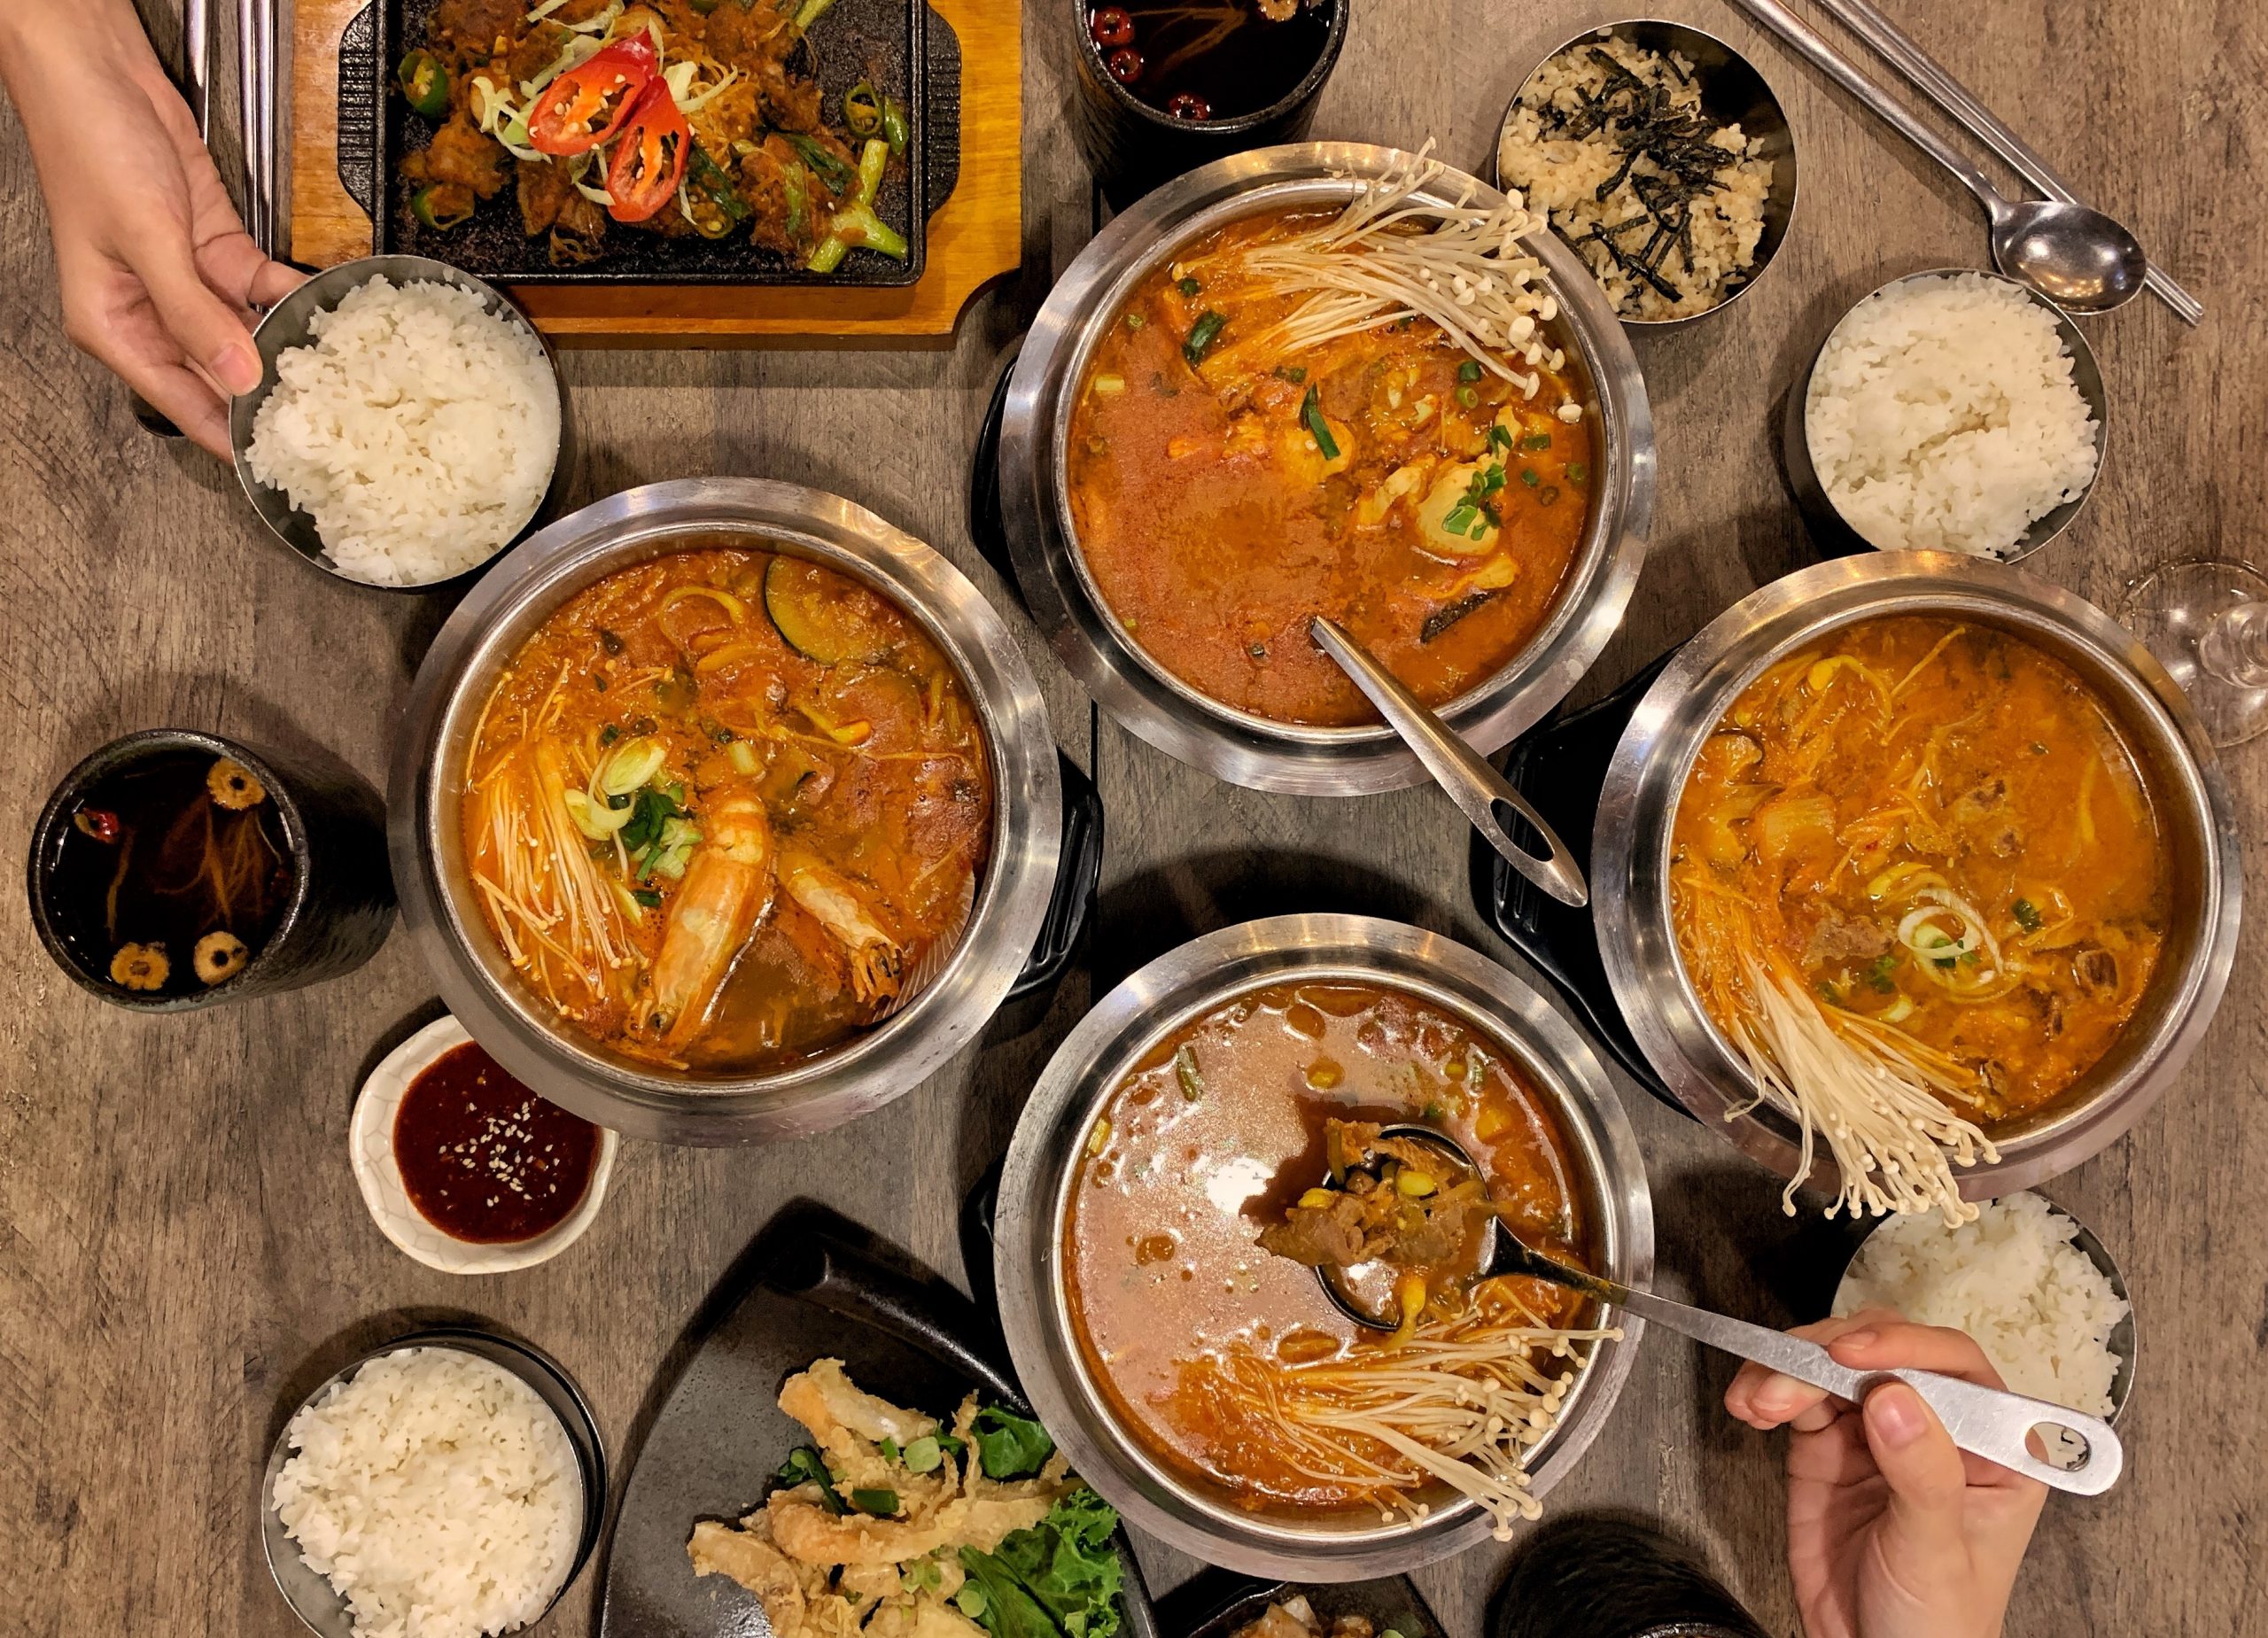 Seoul Garden - Buffet hải sản quận 7 phong cách Hàn Quốc  